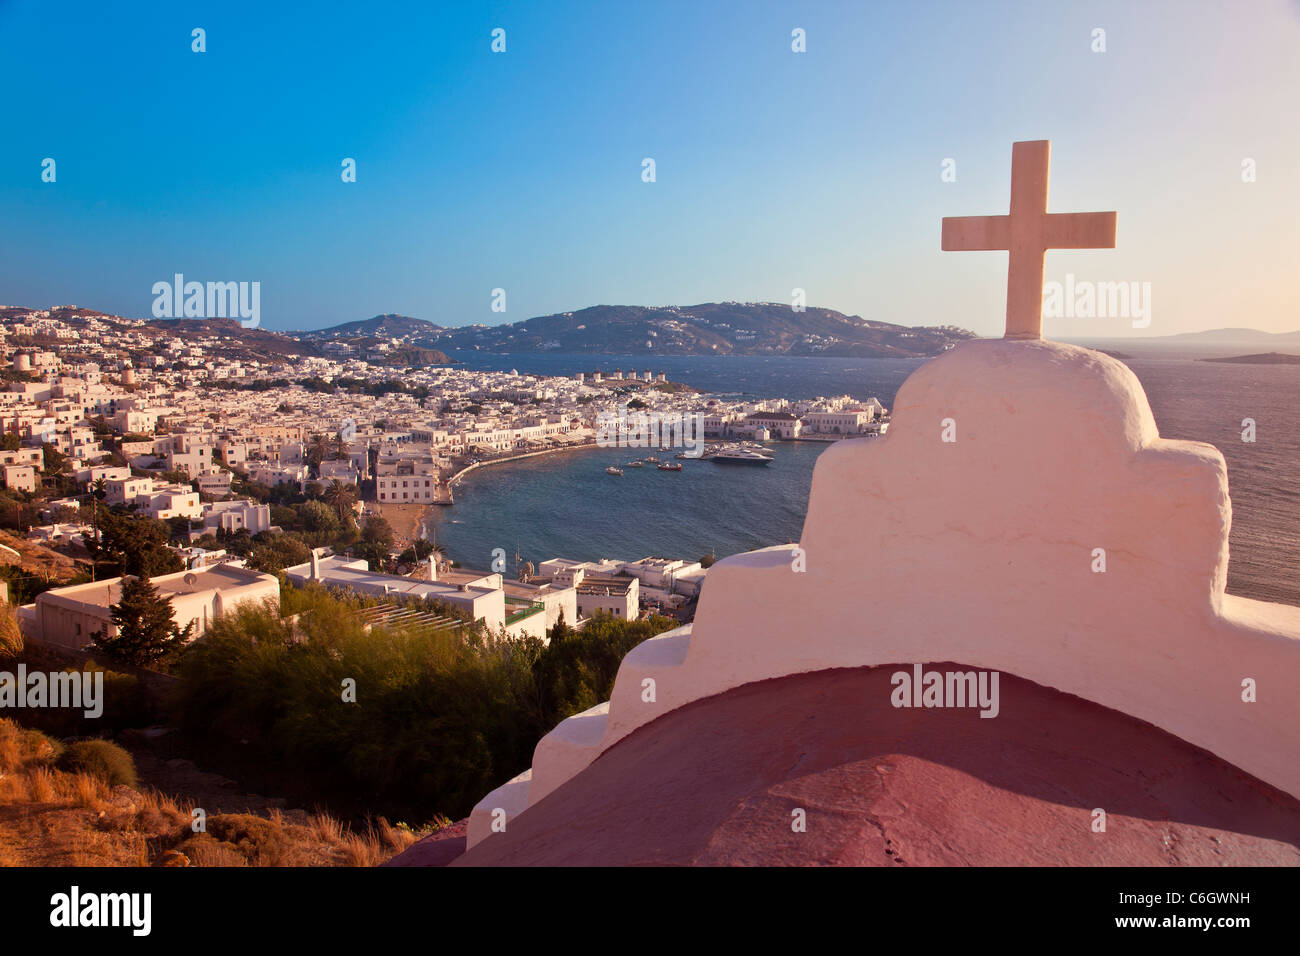 Vista in elevazione oltre il porto e la città vecchia, Mykonos (Hora), Isole Cicladi Grecia, Europa Foto Stock